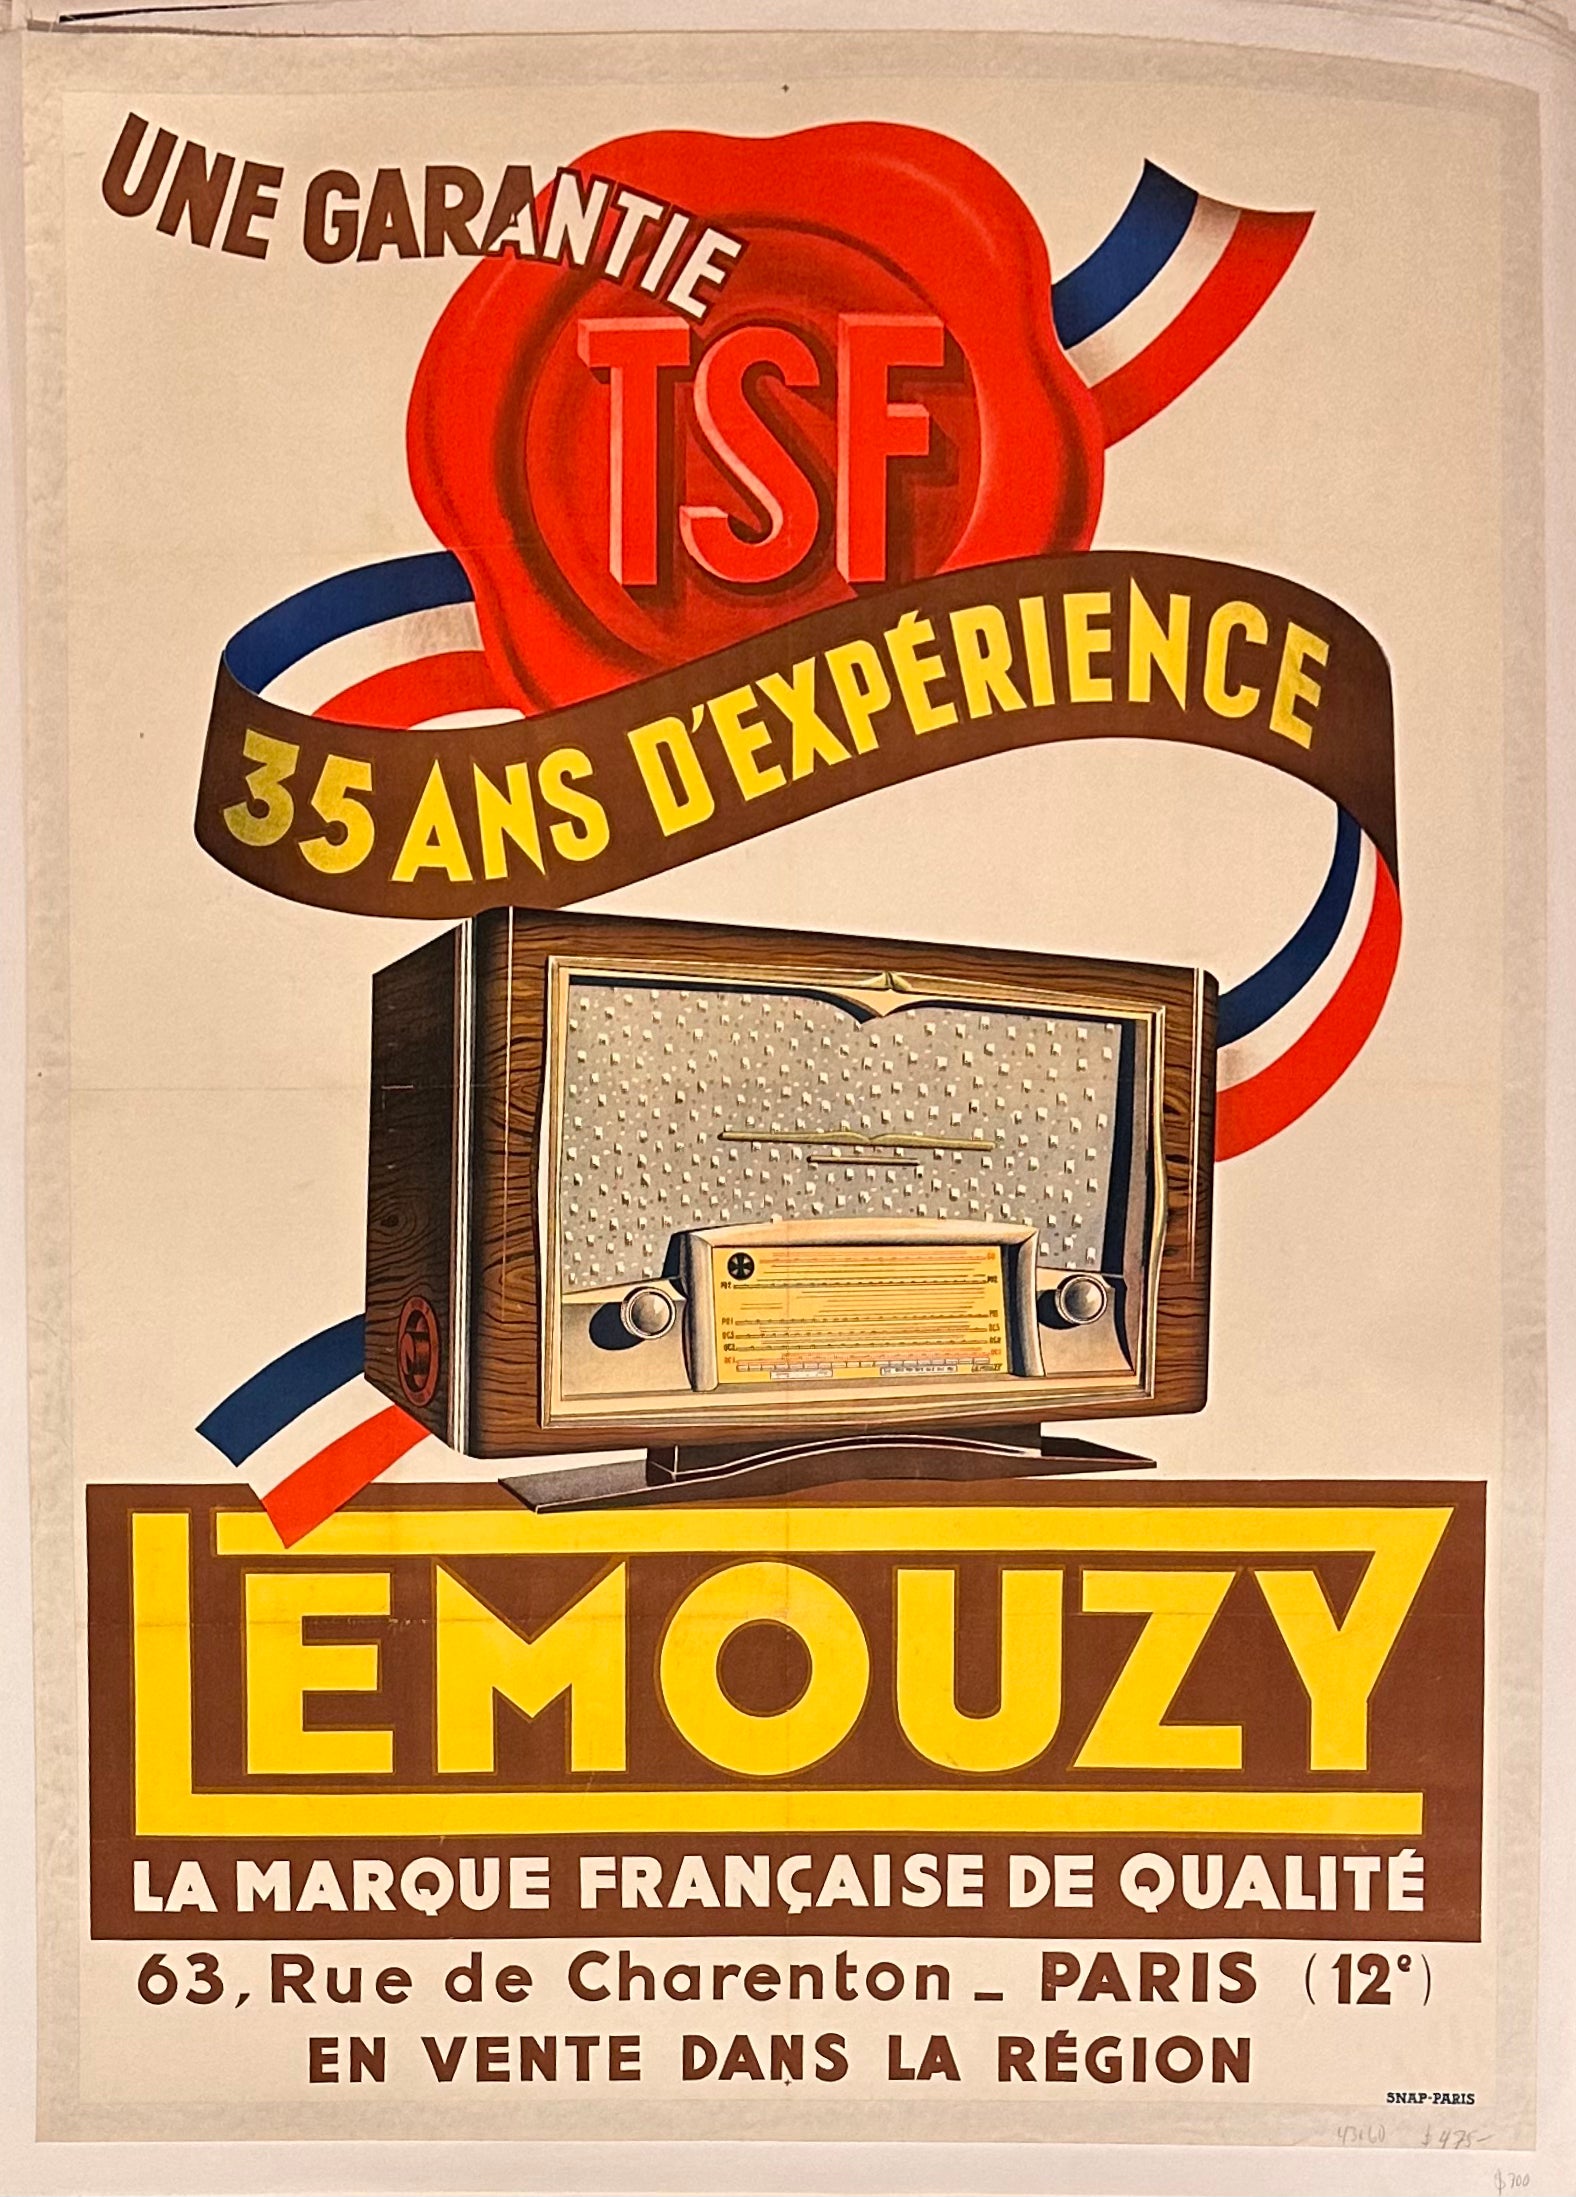 Lemouzy La Marque Francaise De Qualite ✓